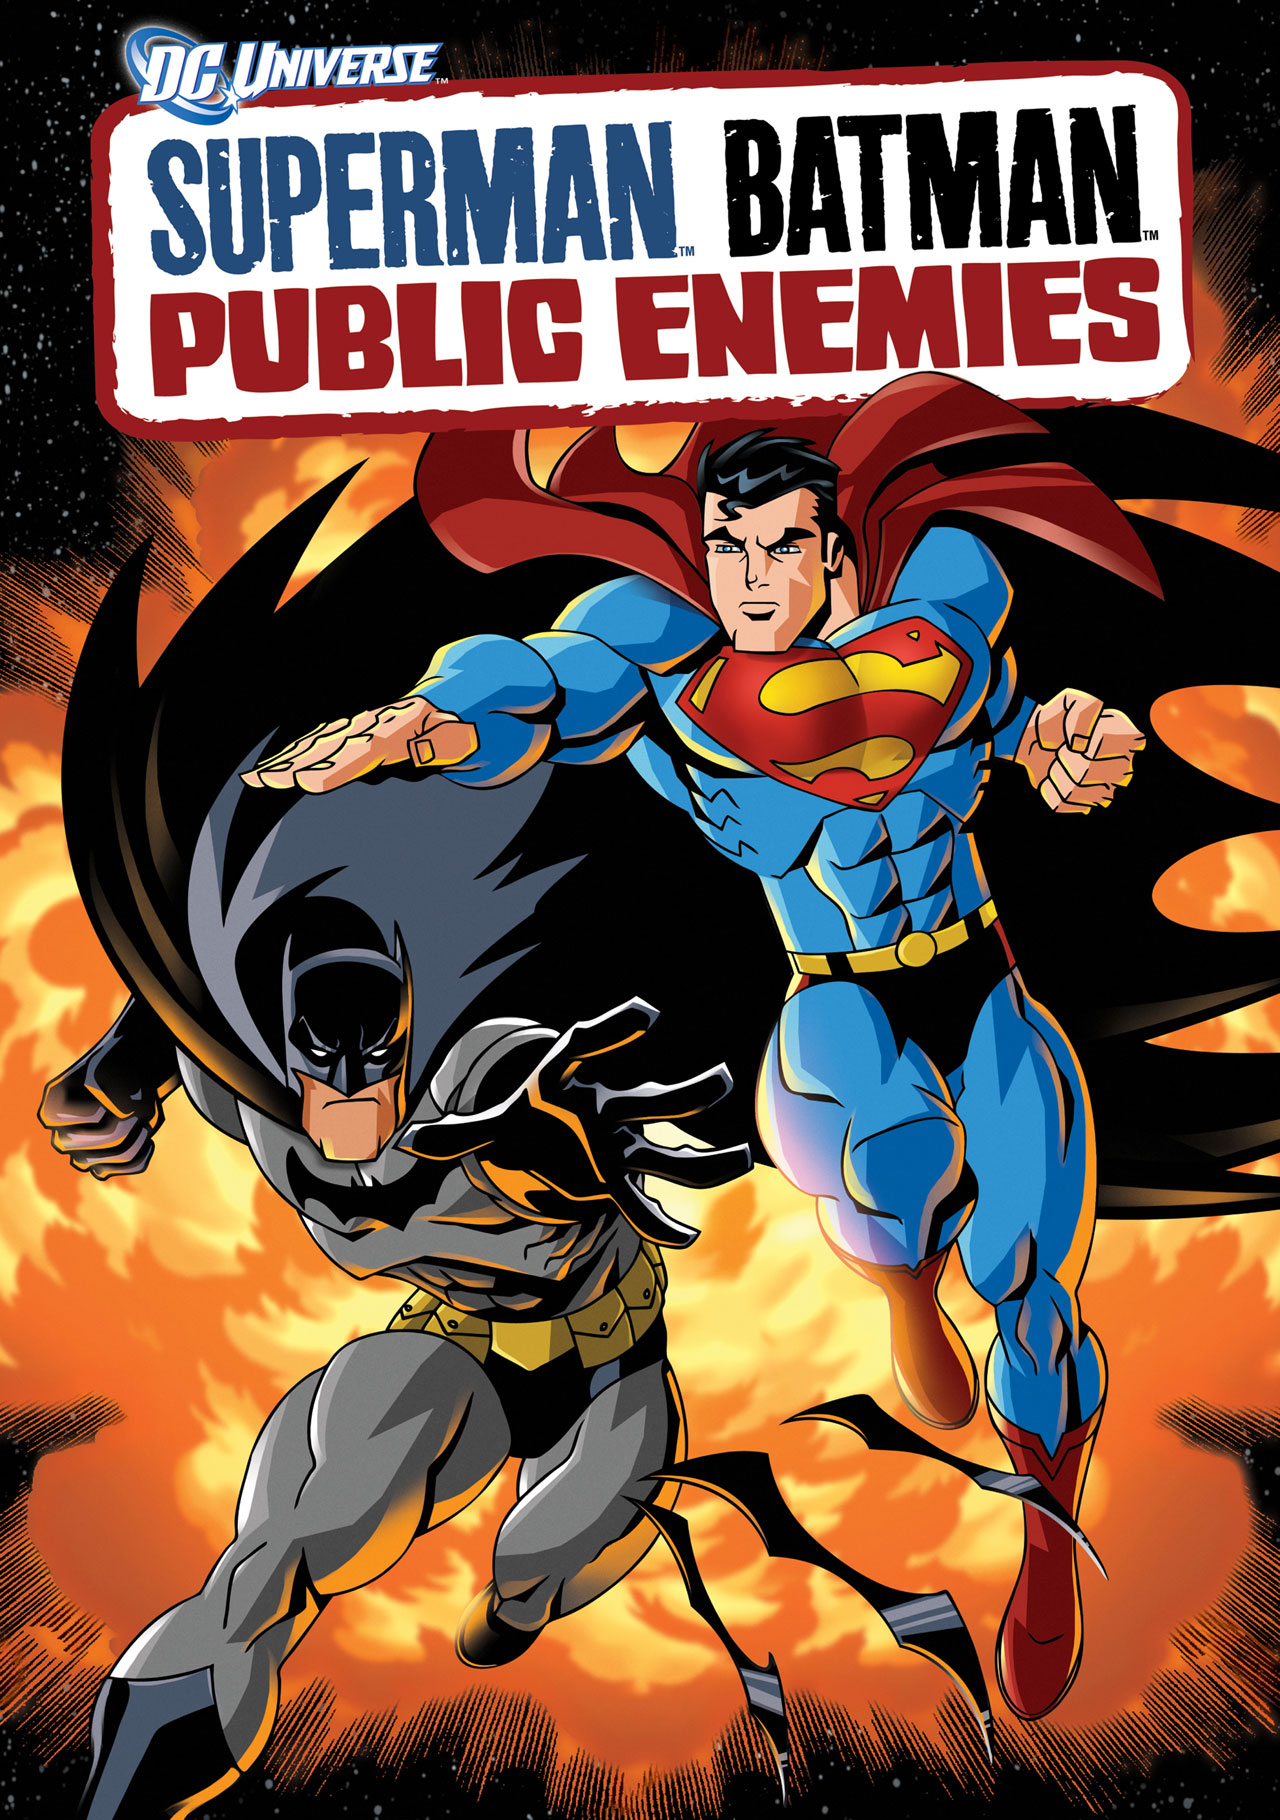 超人与蝙蝠侠:公众之敌 1080P 下载